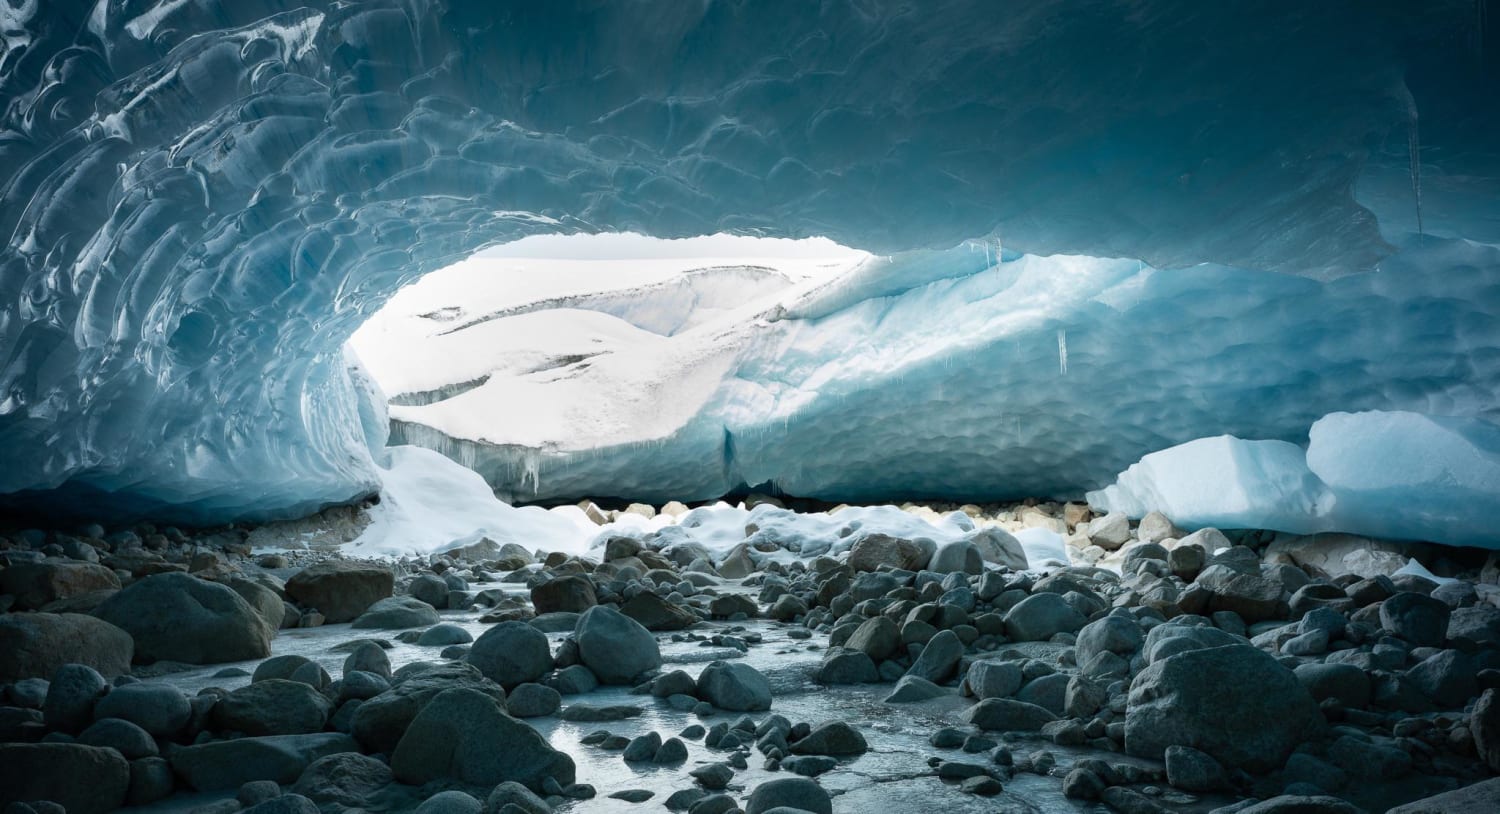 Ice Cave, British Columbia, Canada